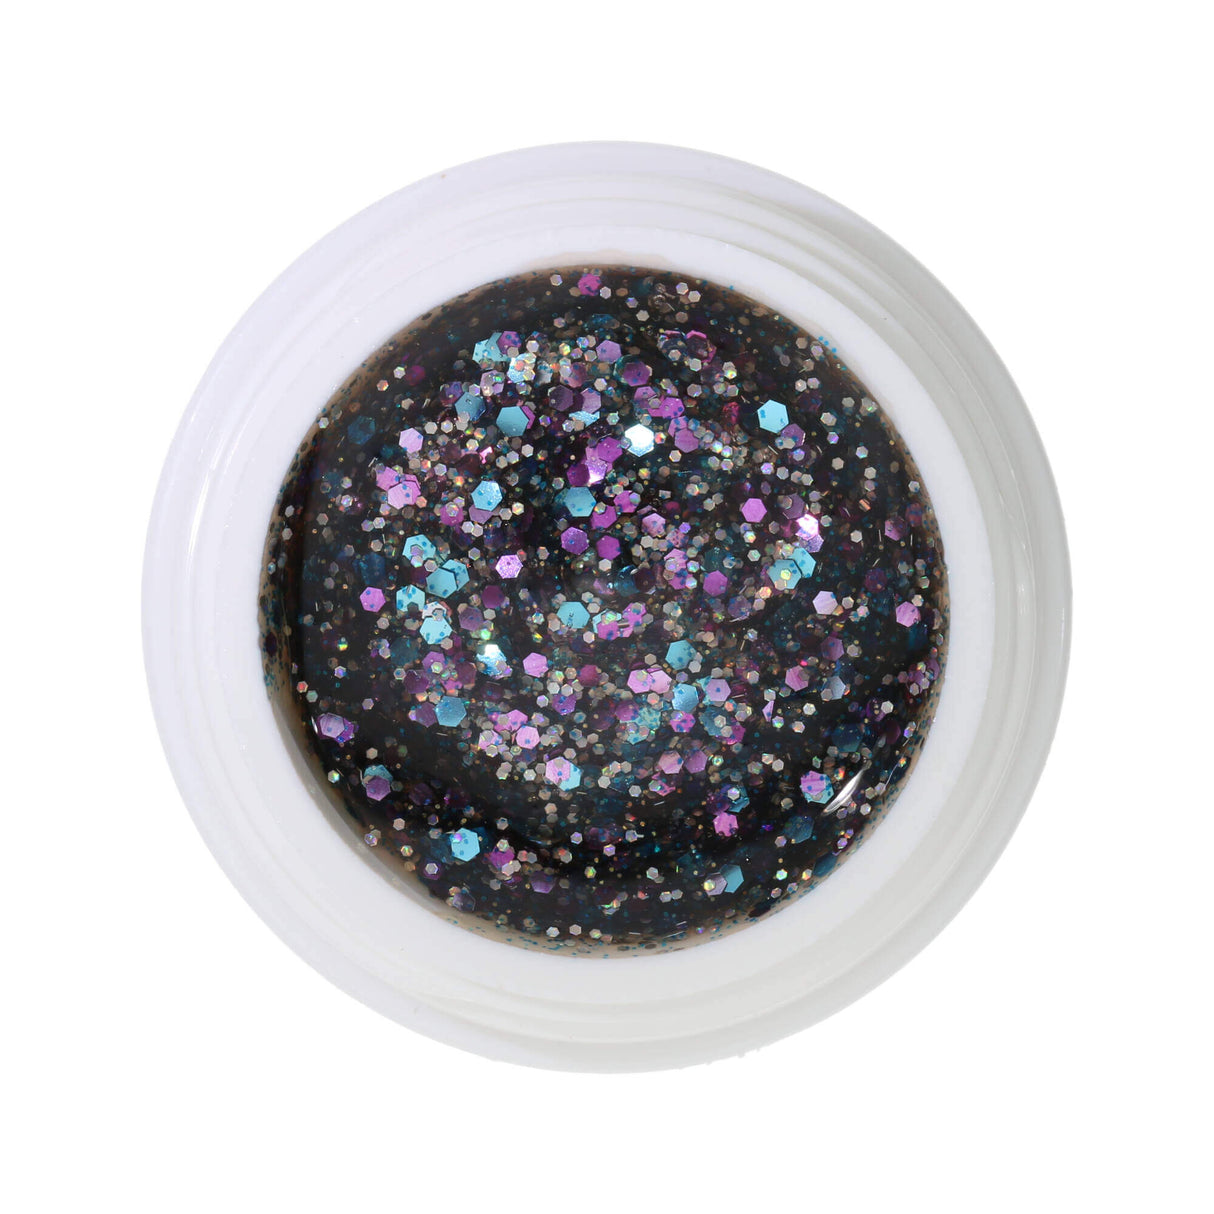 # 327 Premium-GLITTER Color Gel 5ml Dạng gel trong với sự pha trộn giữa ánh bạc và ngọc lam lấp lánh với những điểm nhấn màu tím